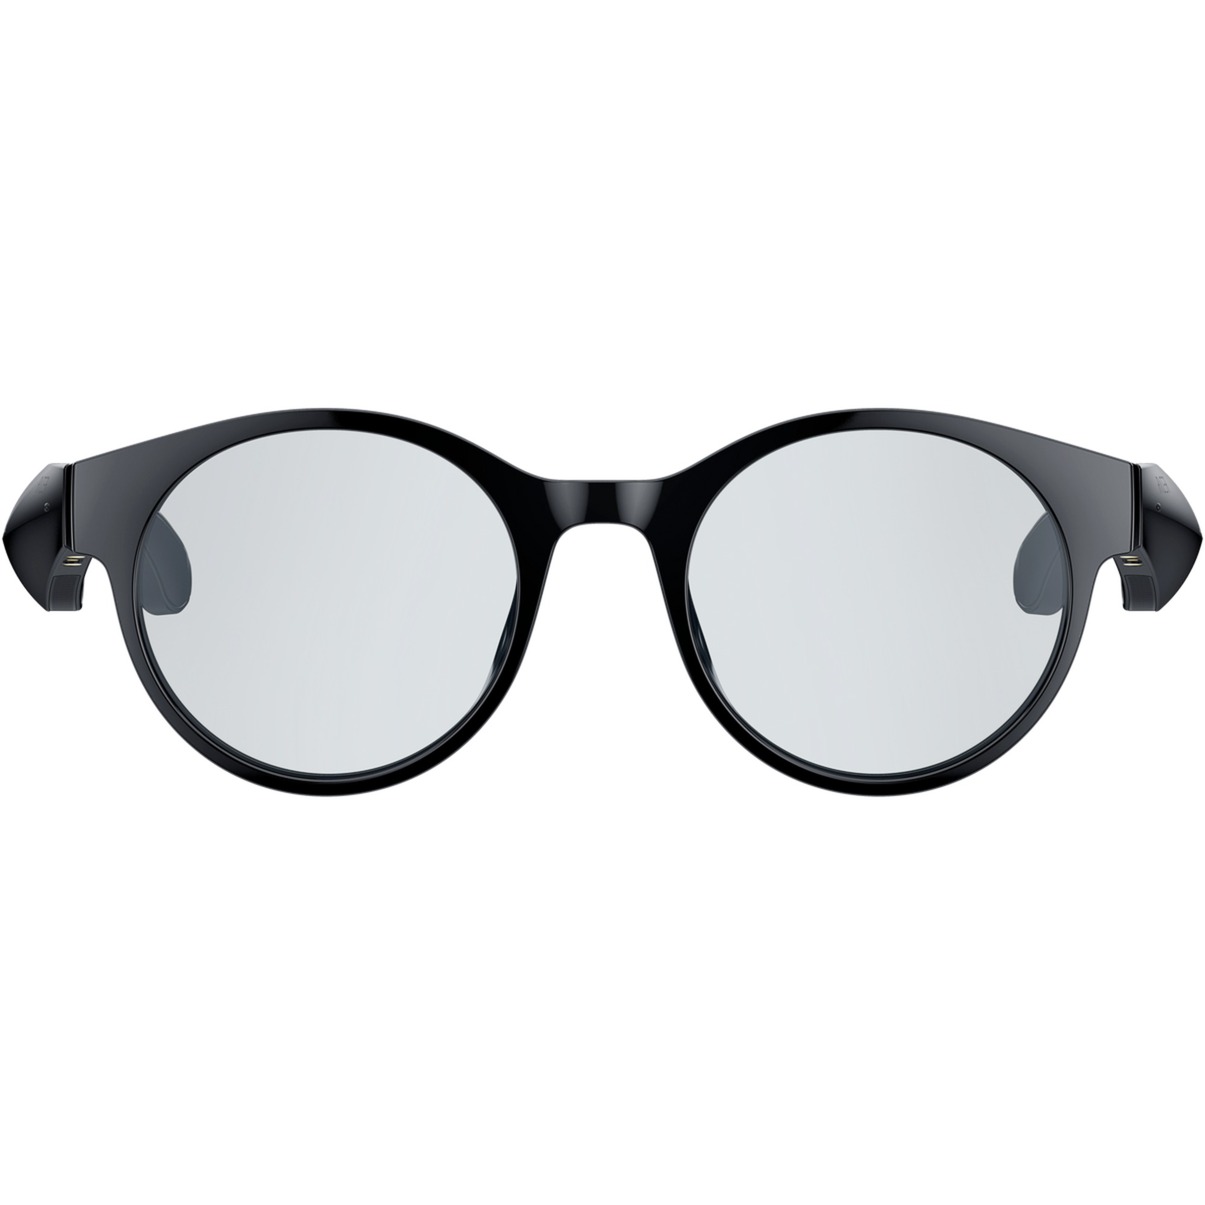 Image of Alternate - Anzu Smart Glasses (S/M, Rund), Multimedia-Brille online einkaufen bei Alternate